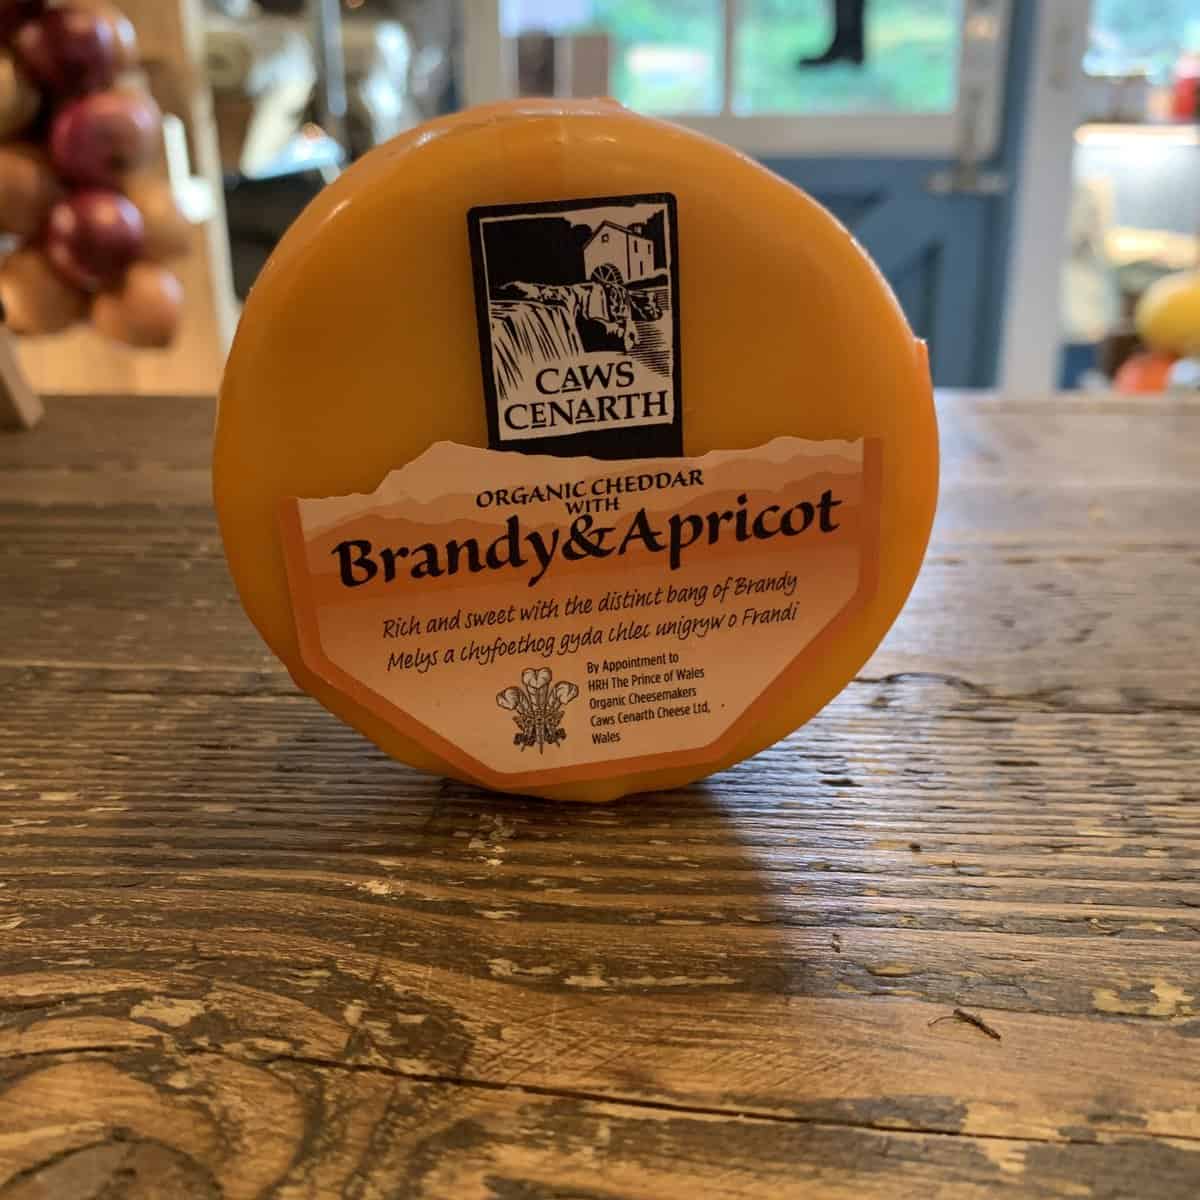 Caws Cenarth Brandy & Apricot Cheese